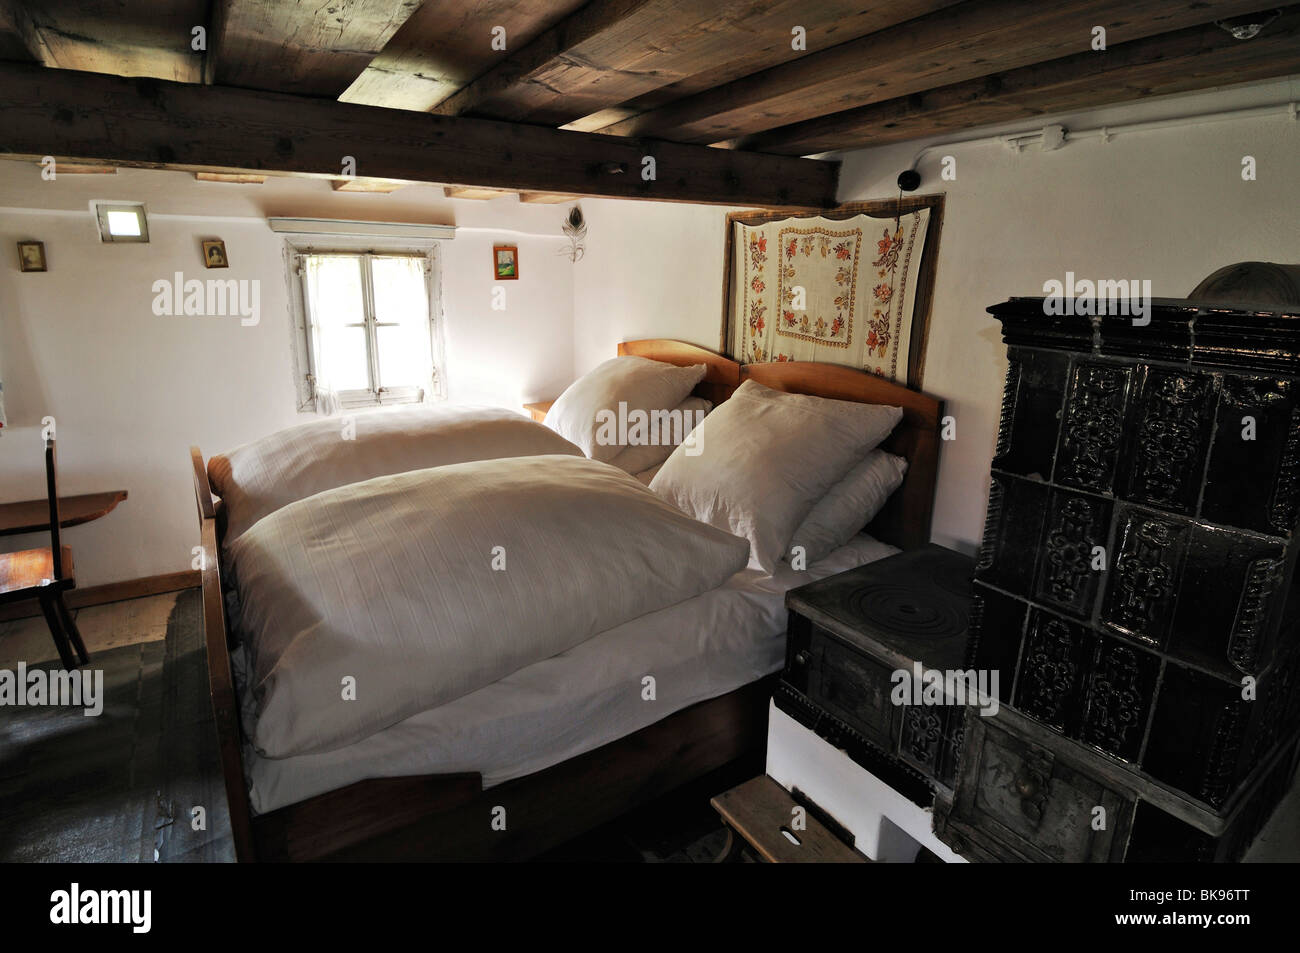 Schlafzimmer mit Kachelofen, Glentleiten Landwirtschaft Museum, Bayern, Deutschland, Europa Stockfoto